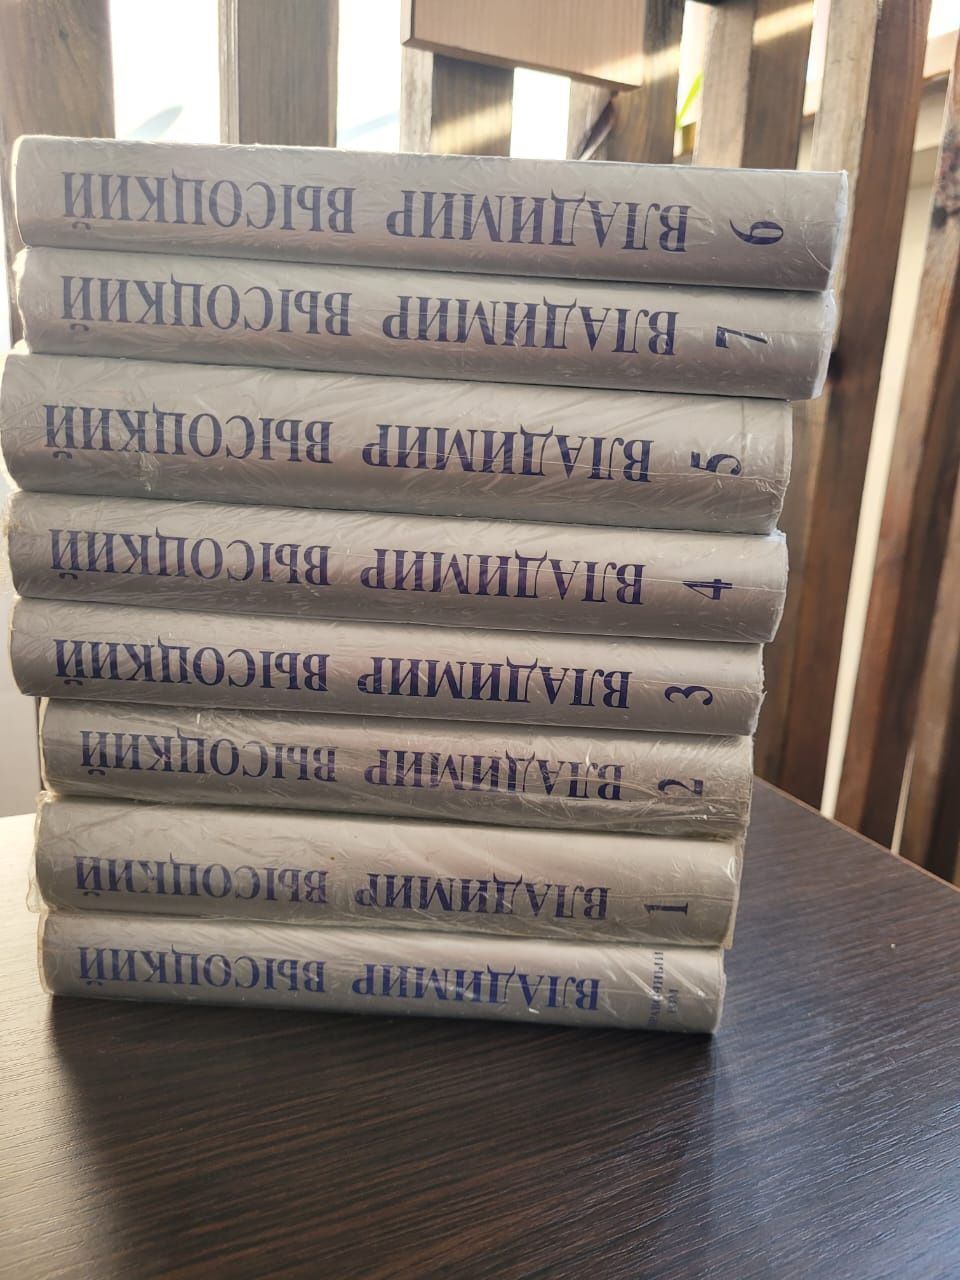 Коллекционное издание книг Владимира Высоцкого.